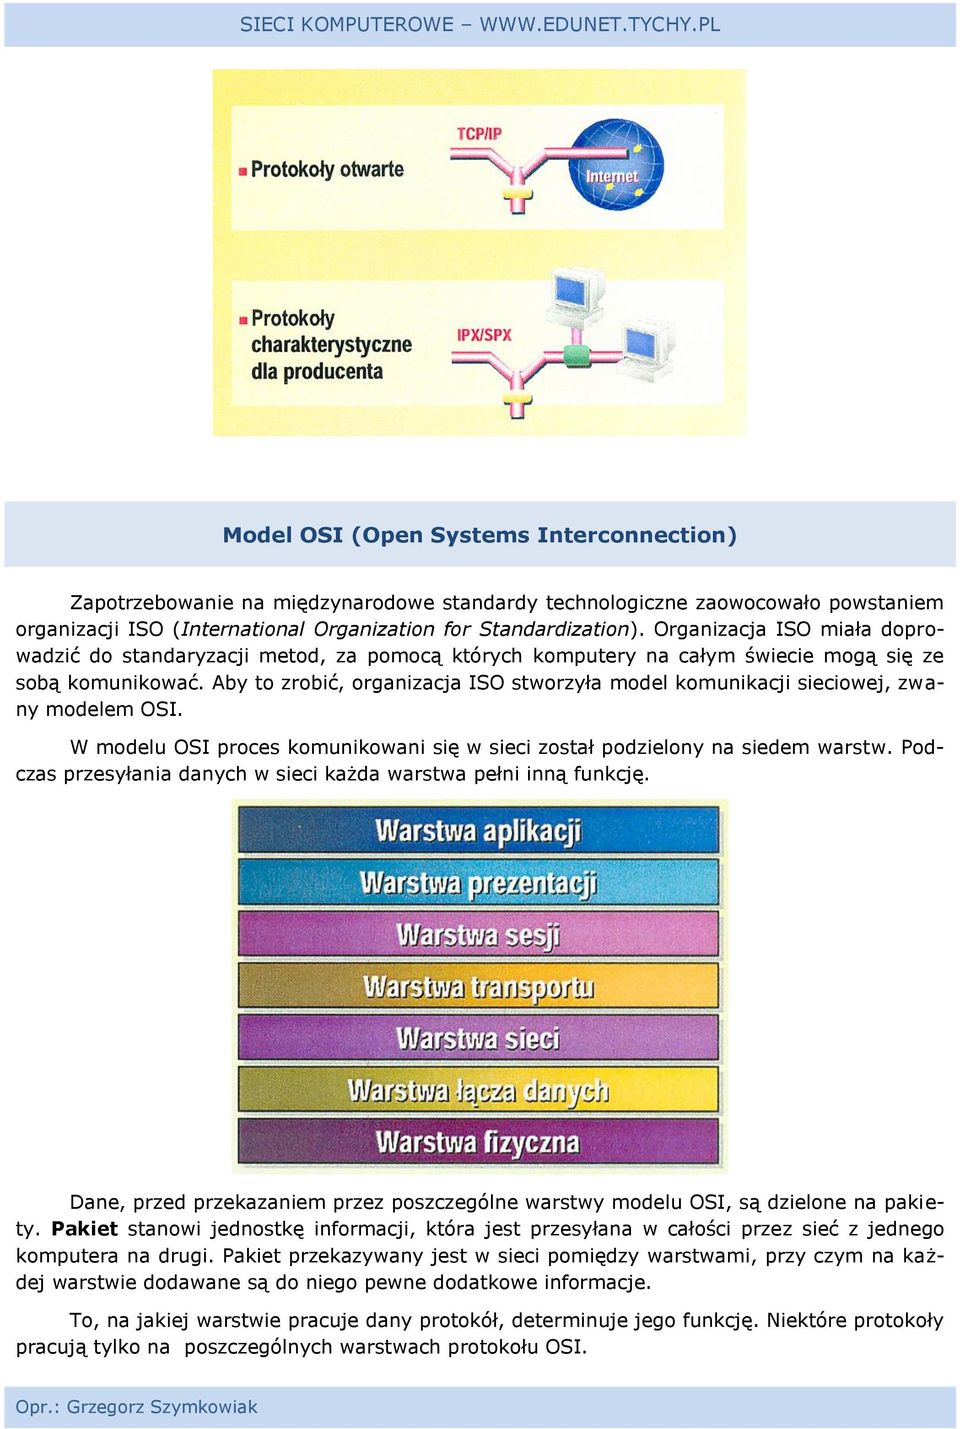 Aby to zrobić, organizacja ISO stworzyła model komunikacji sieciowej, zwany modelem OSI. W modelu OSI proces komunikowani się w sieci został podzielony na siedem warstw.